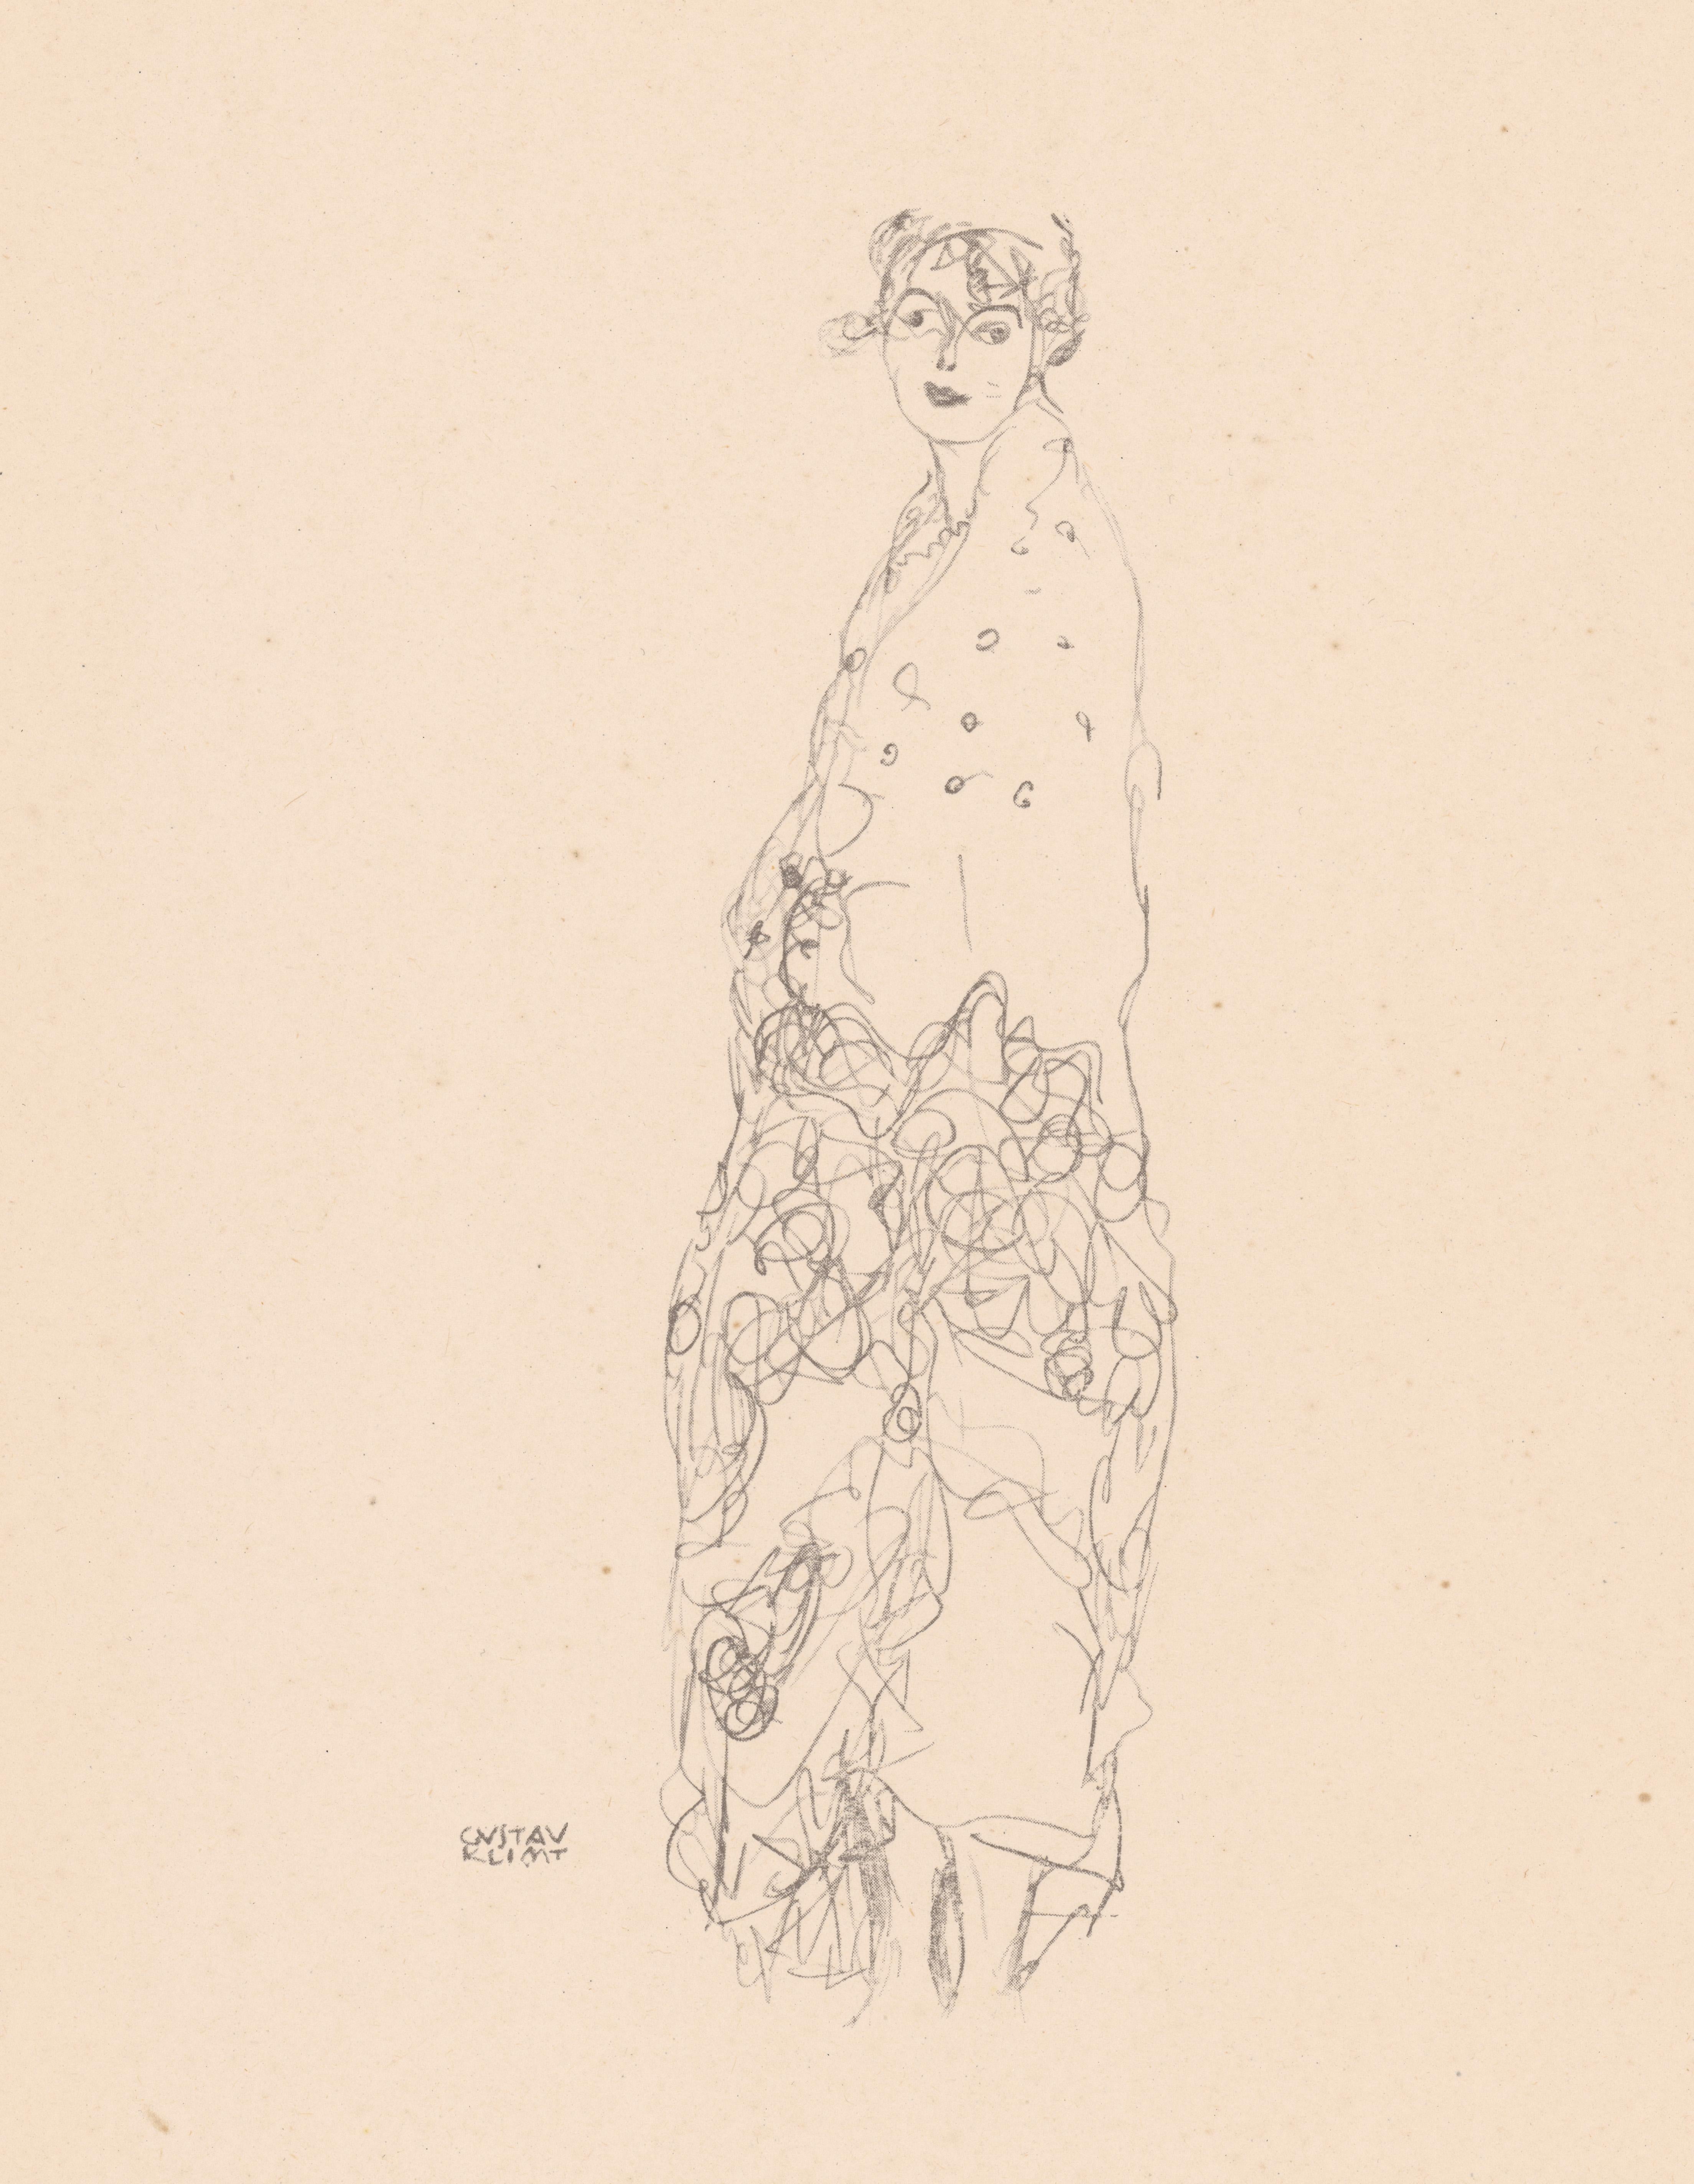 Femme en robe, Gustav Klimt Handzeichnungen (Sketch), Thyrsos Verlag, 1922 - Print de (after) Gustav Klimt